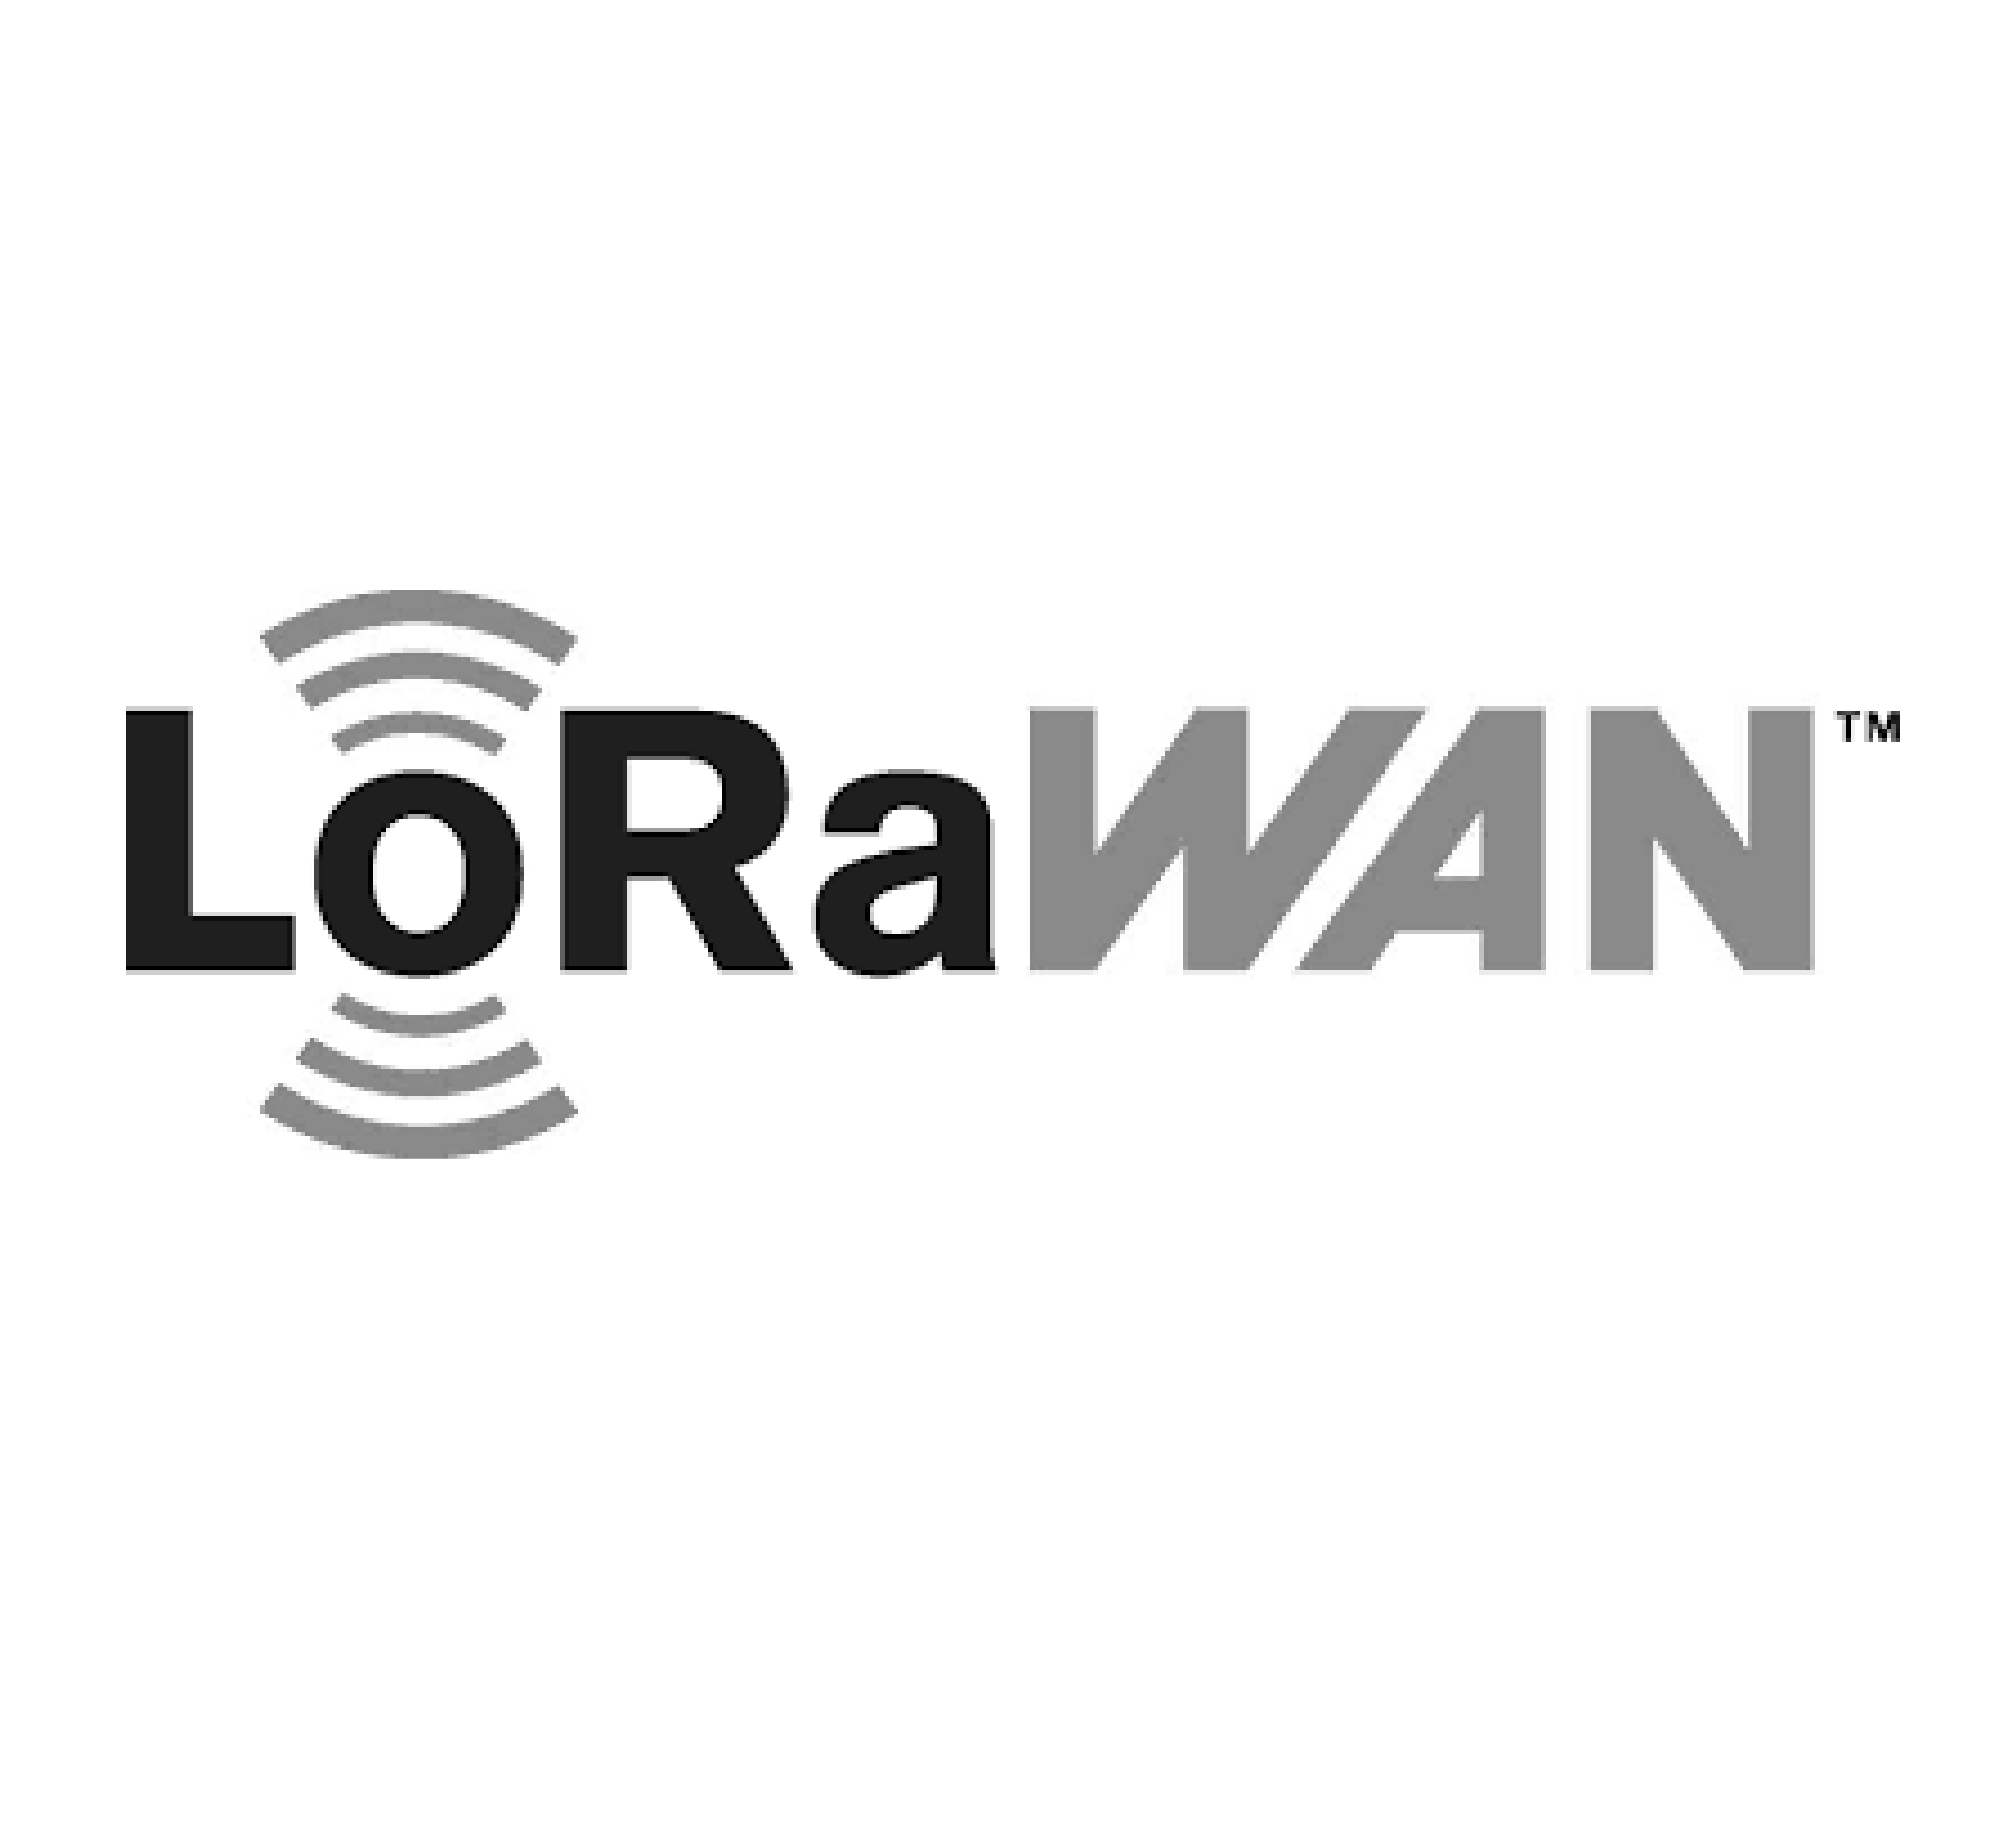 LoraWan